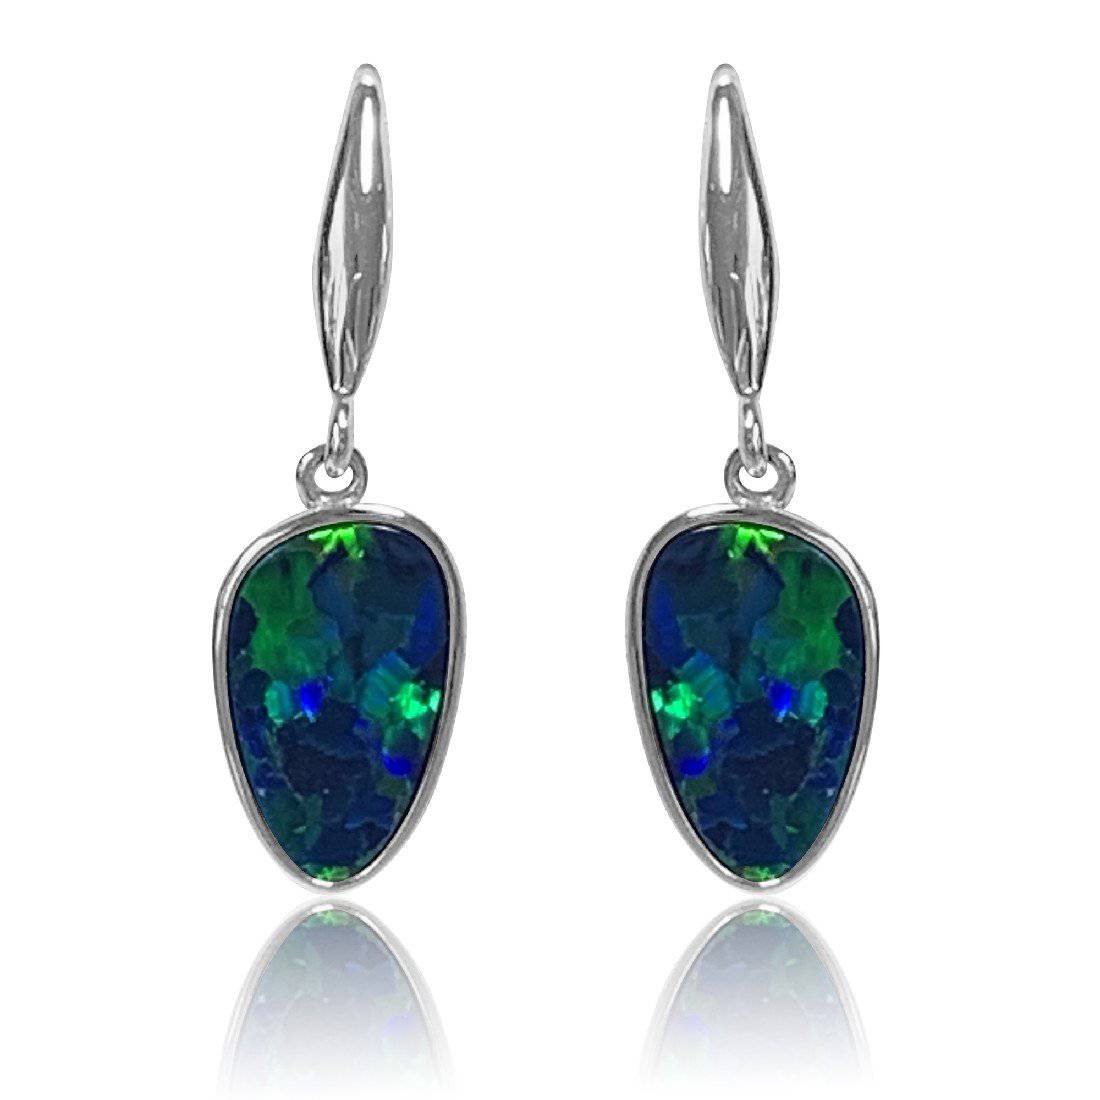 14kt White Gold Opal earrings dangling - Masterpiece Jewellery Opal & Gems Sydney Australia | Online Shop